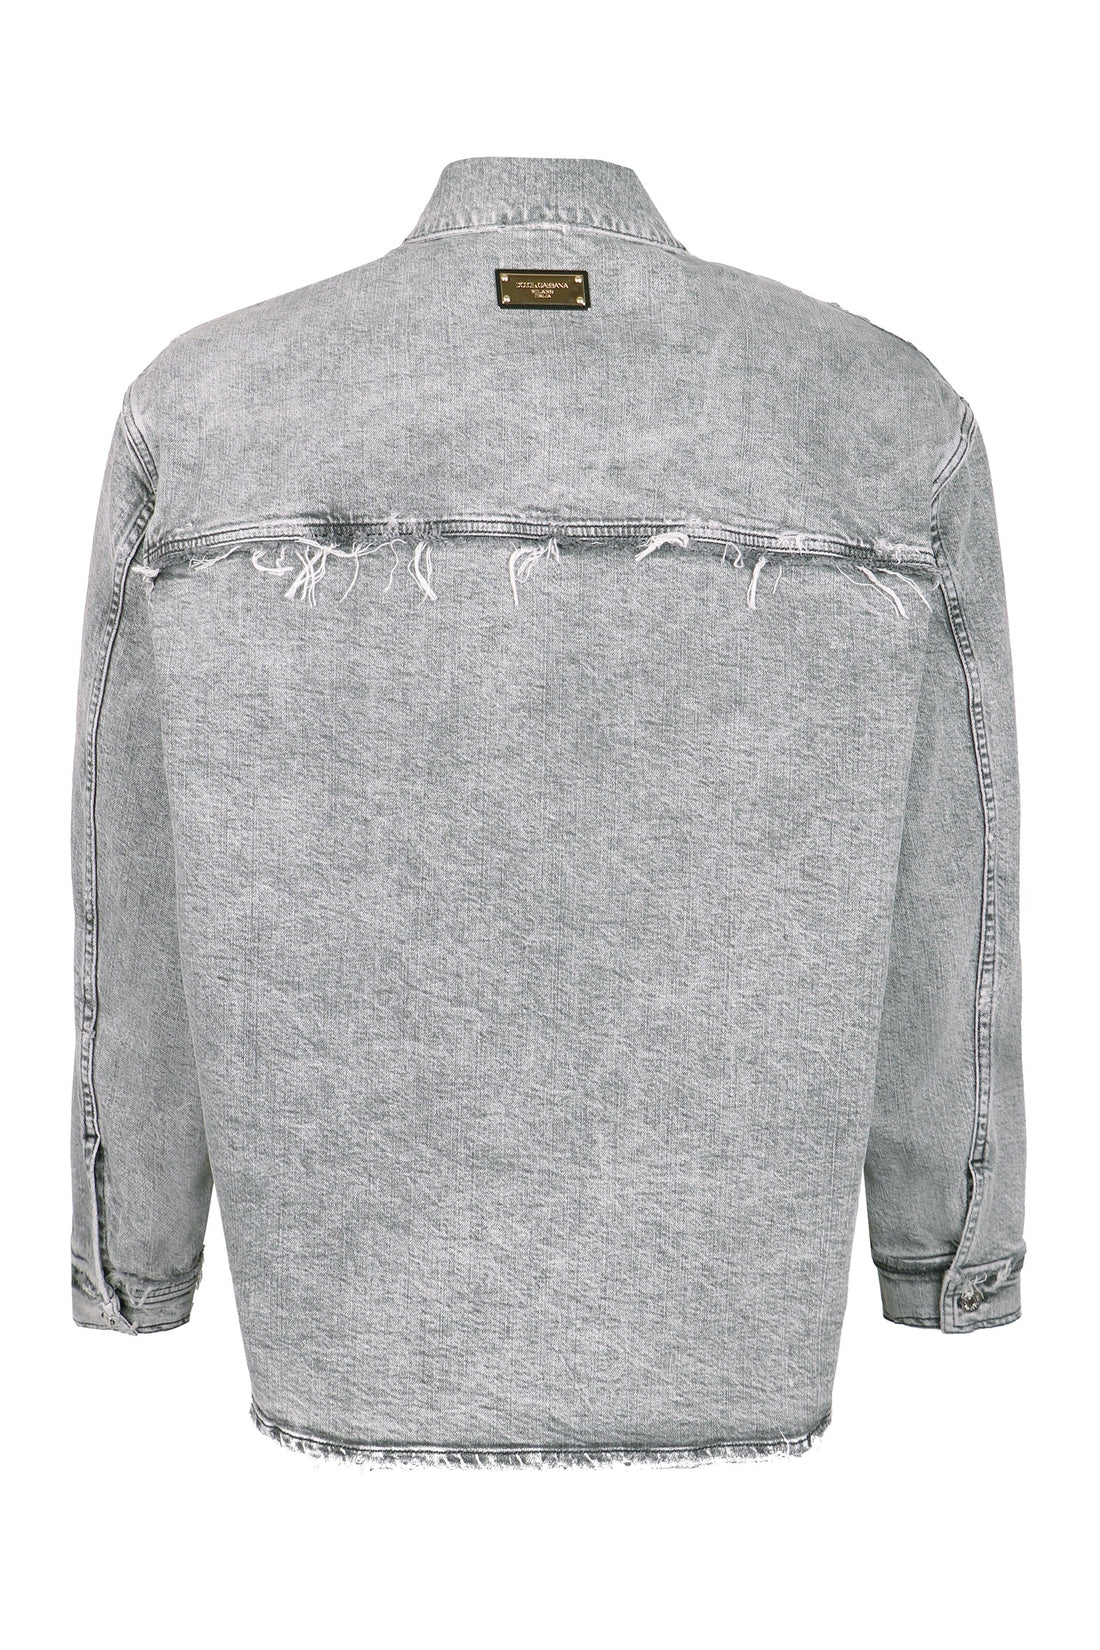 Dolce & Gabbana-OUTLET-SALE-Destroyed denim jacket-ARCHIVIST